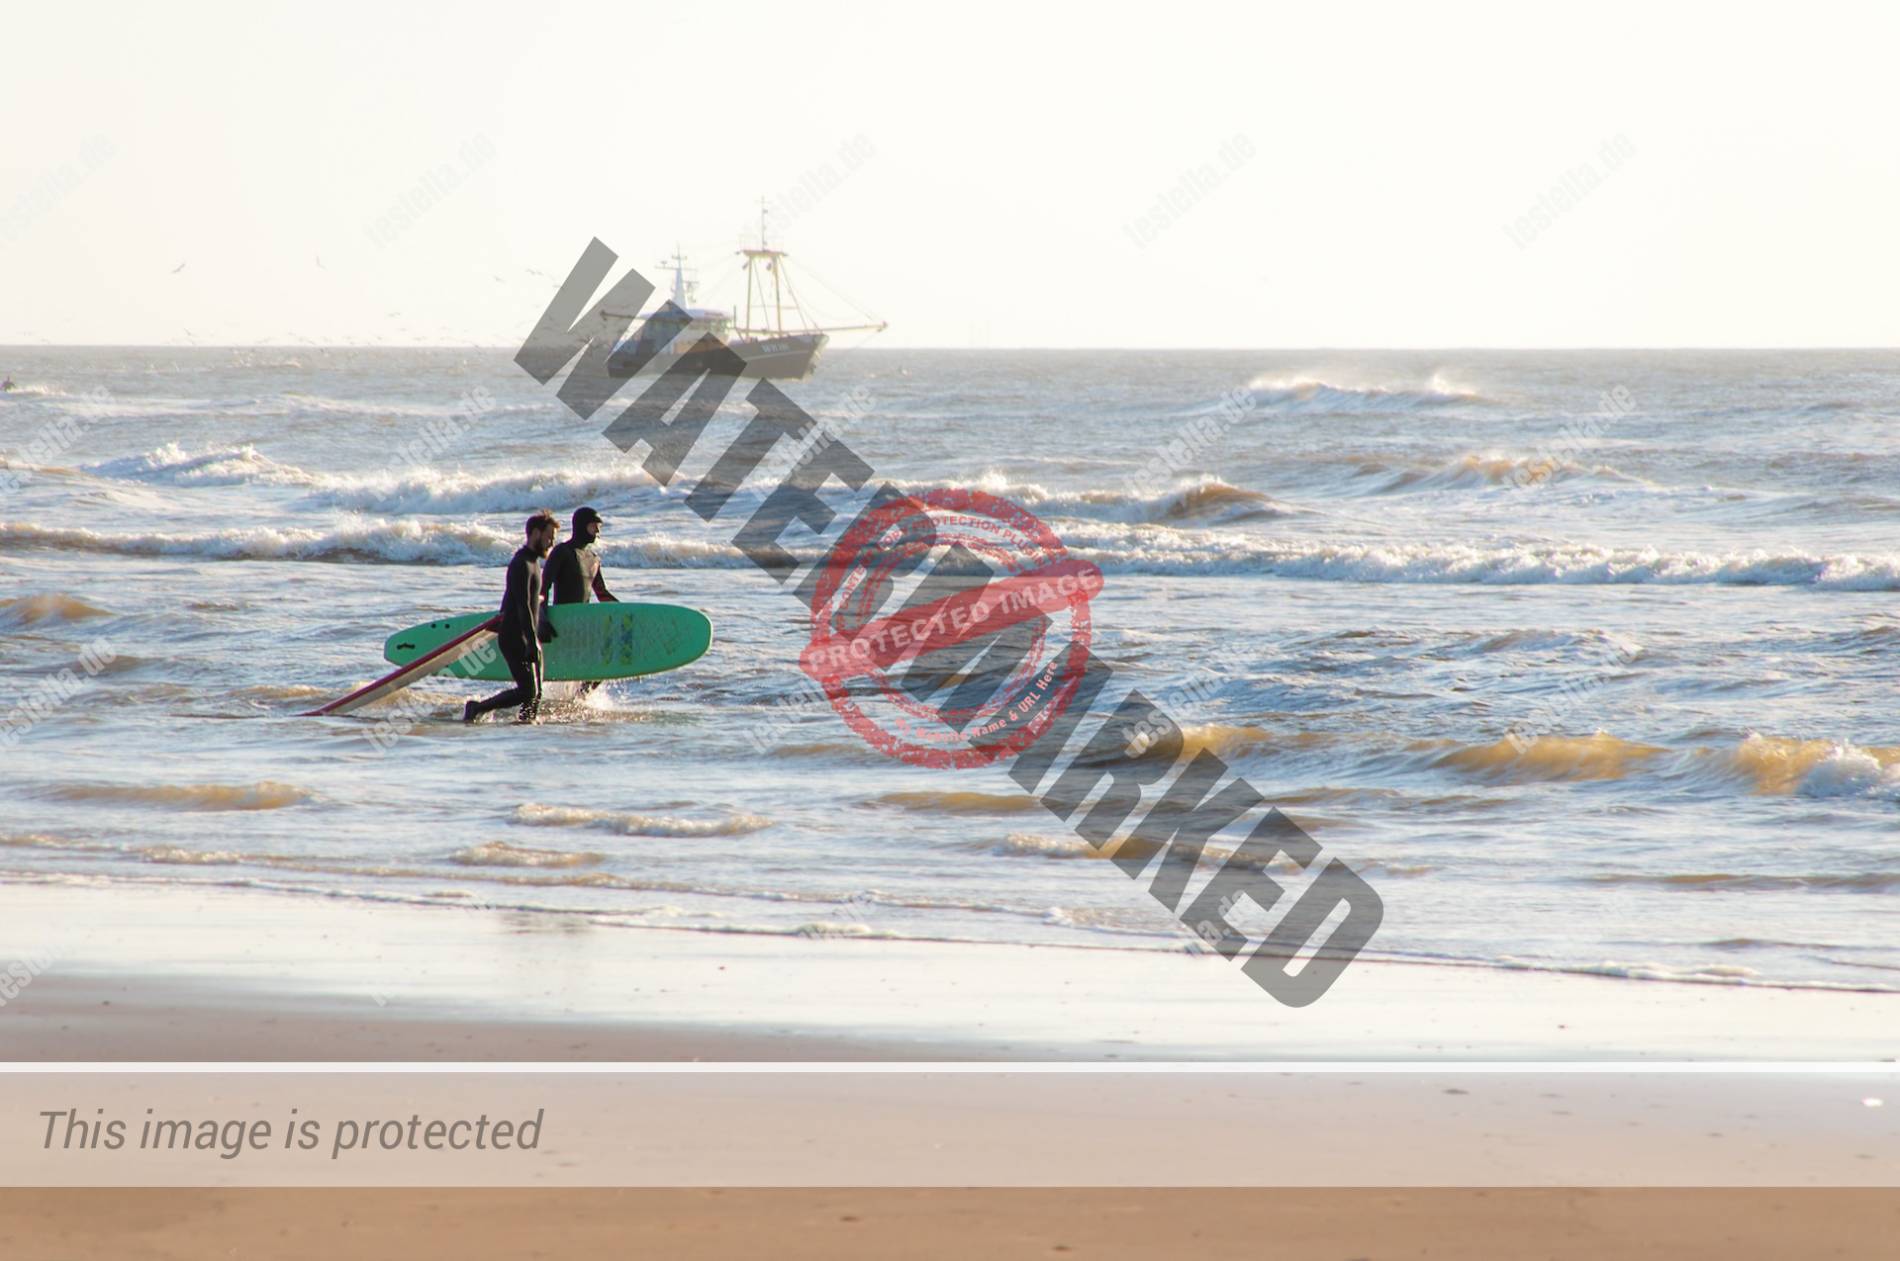 Surfen ist in den Niederlanden sehr populär, da die Niederlande eine große Küstenlinie und genügend Platz haben, um diesen Sport auszuüben.